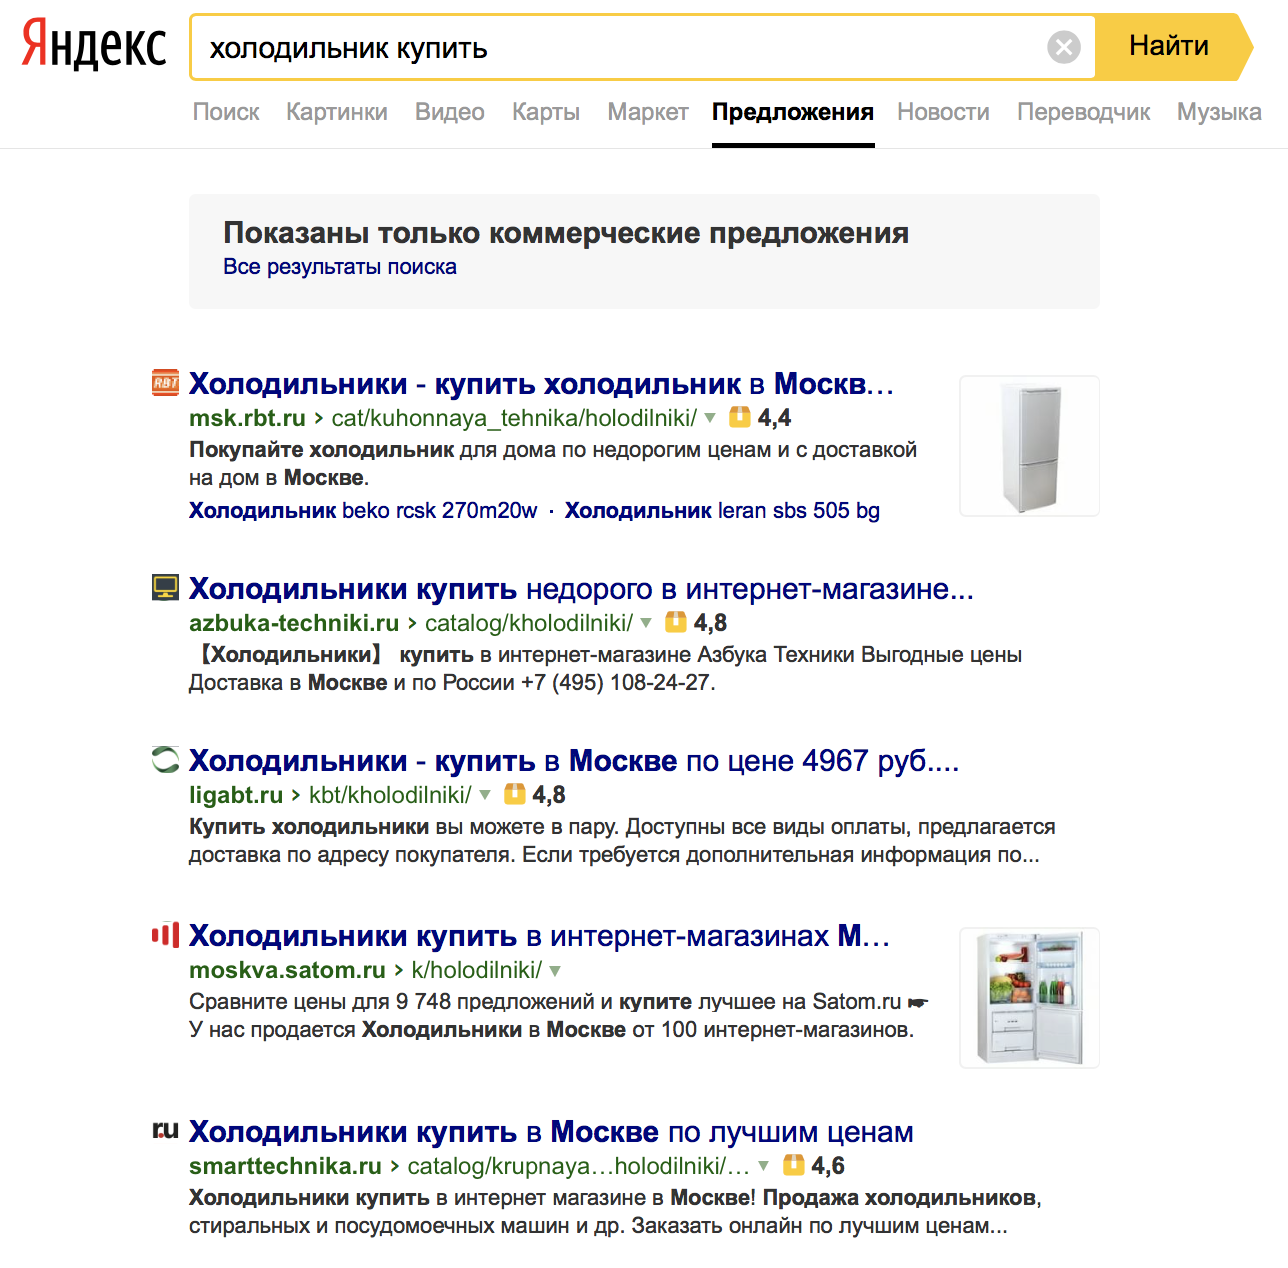 В Яндексе прокомментировали фильтрацию коммерческой выдачи